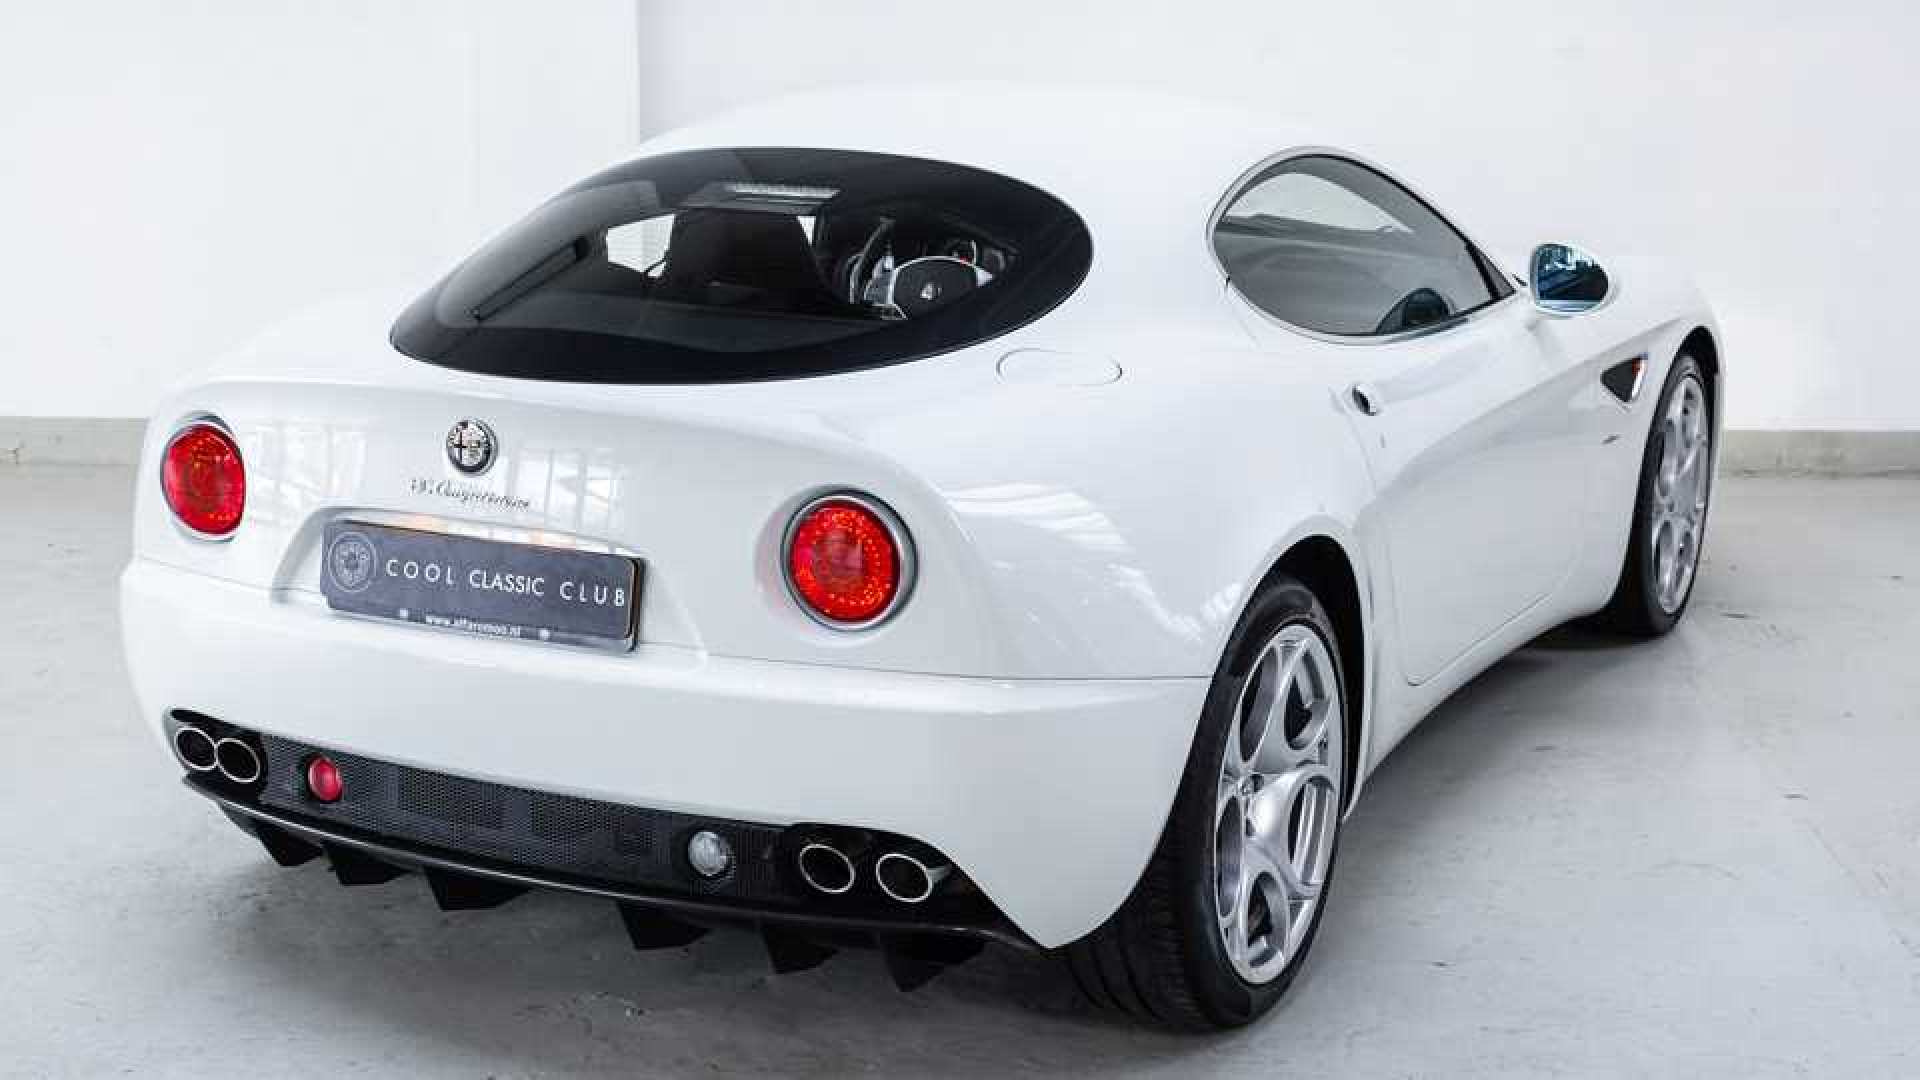 Bieden op de zeldzame Alfa Romeo van wijlen Jan des Bouvrie. Zie foto's plus alle info. 5